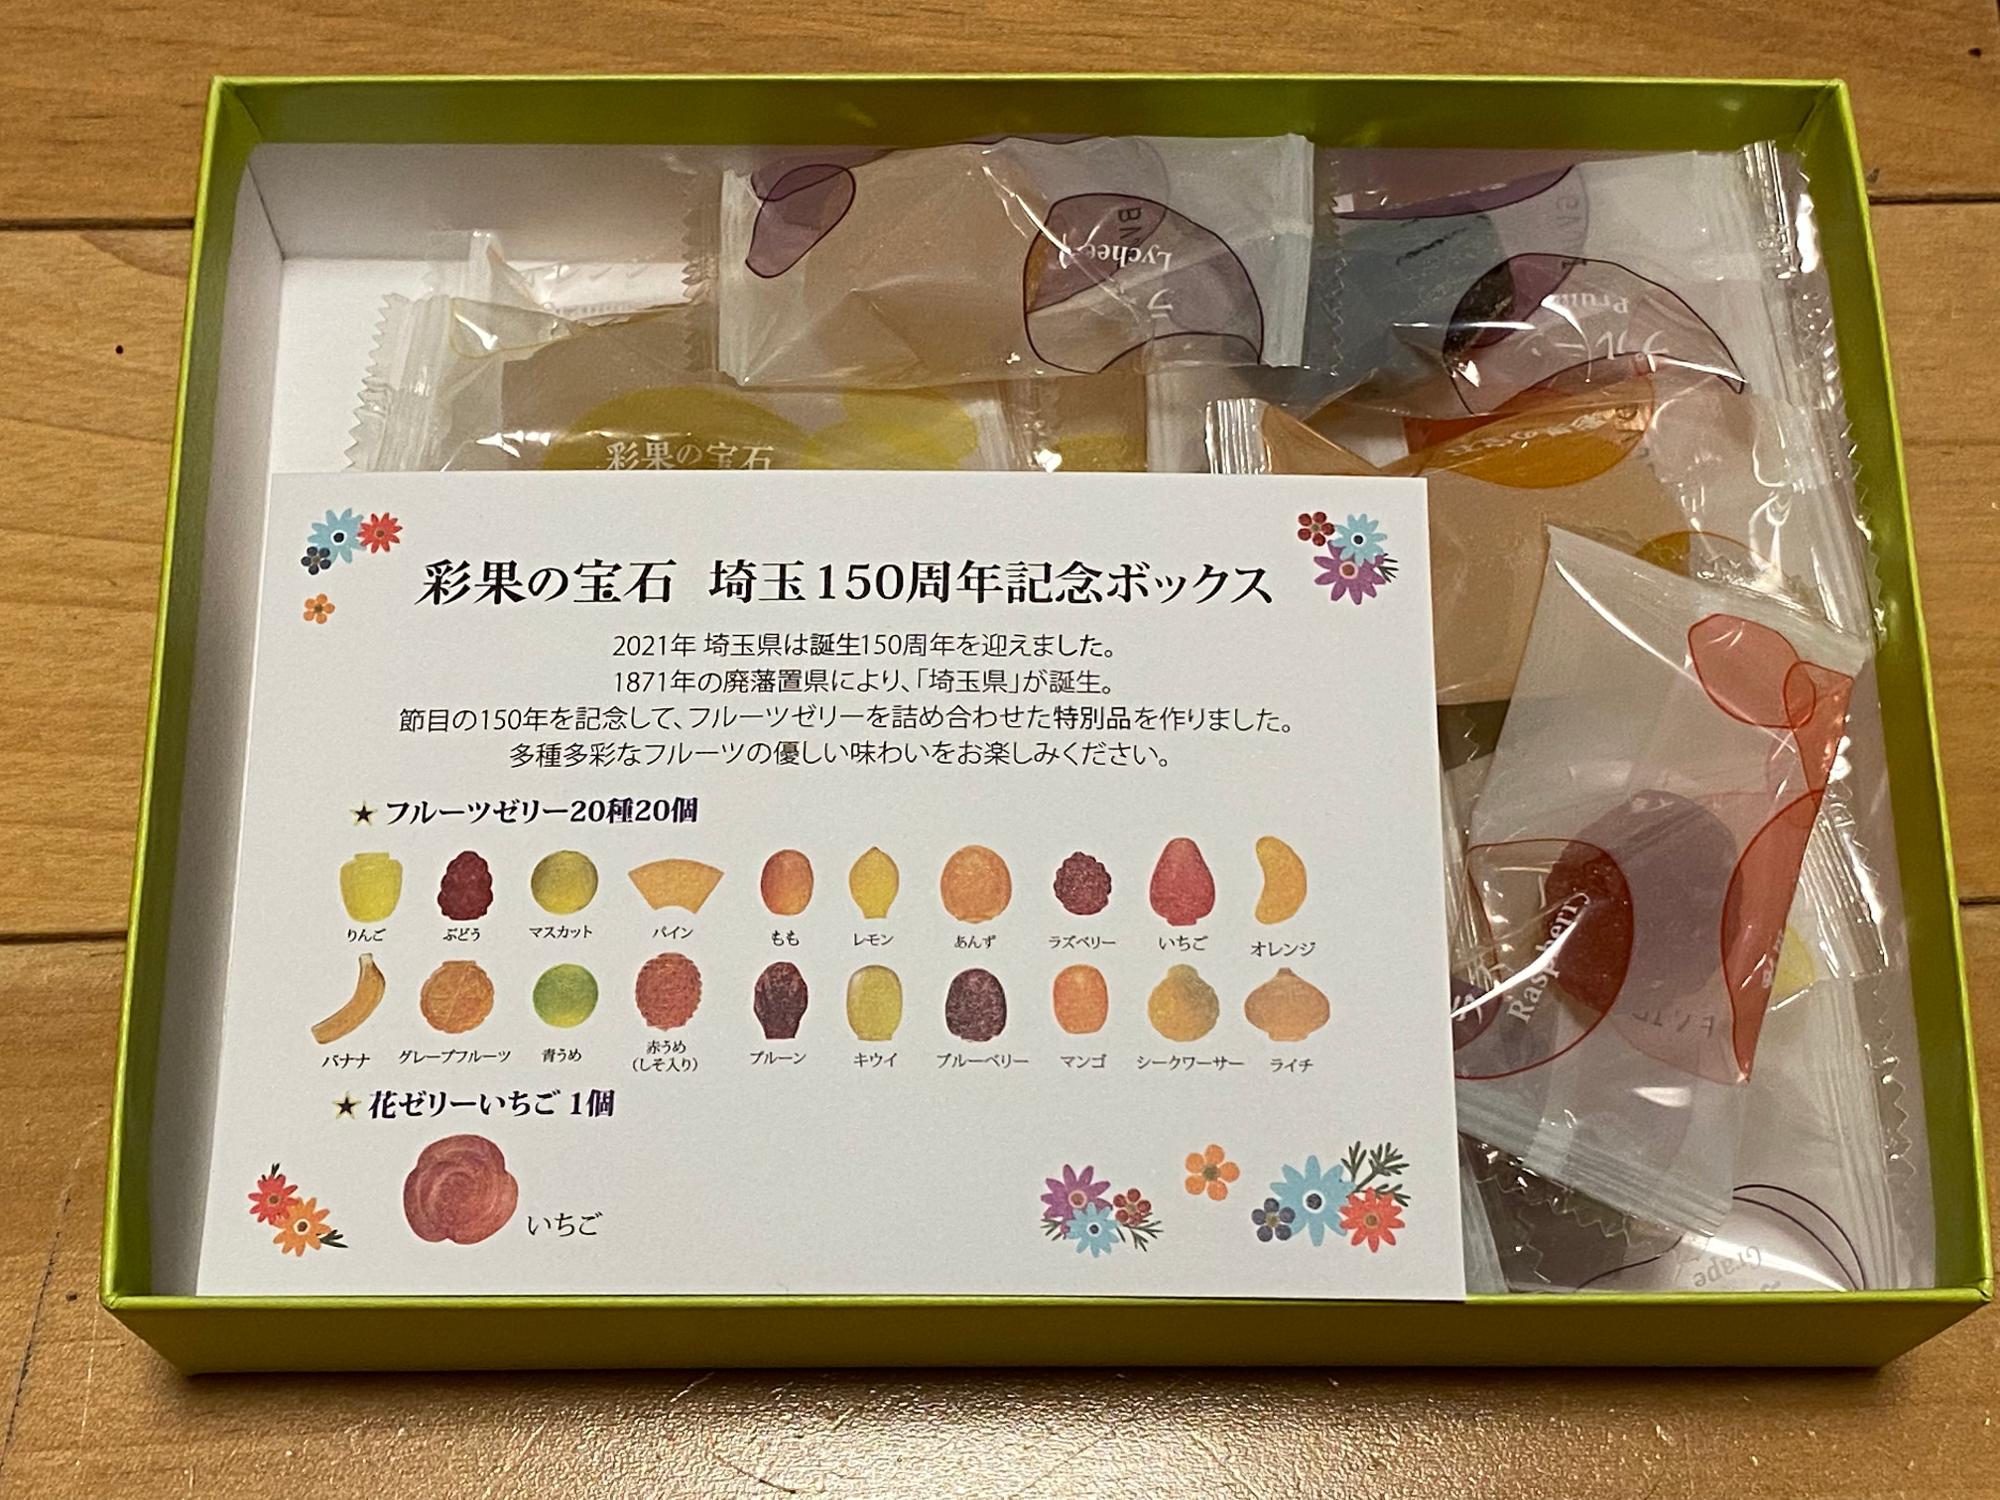 「彩果の宝石」埼玉県150周年ボックス